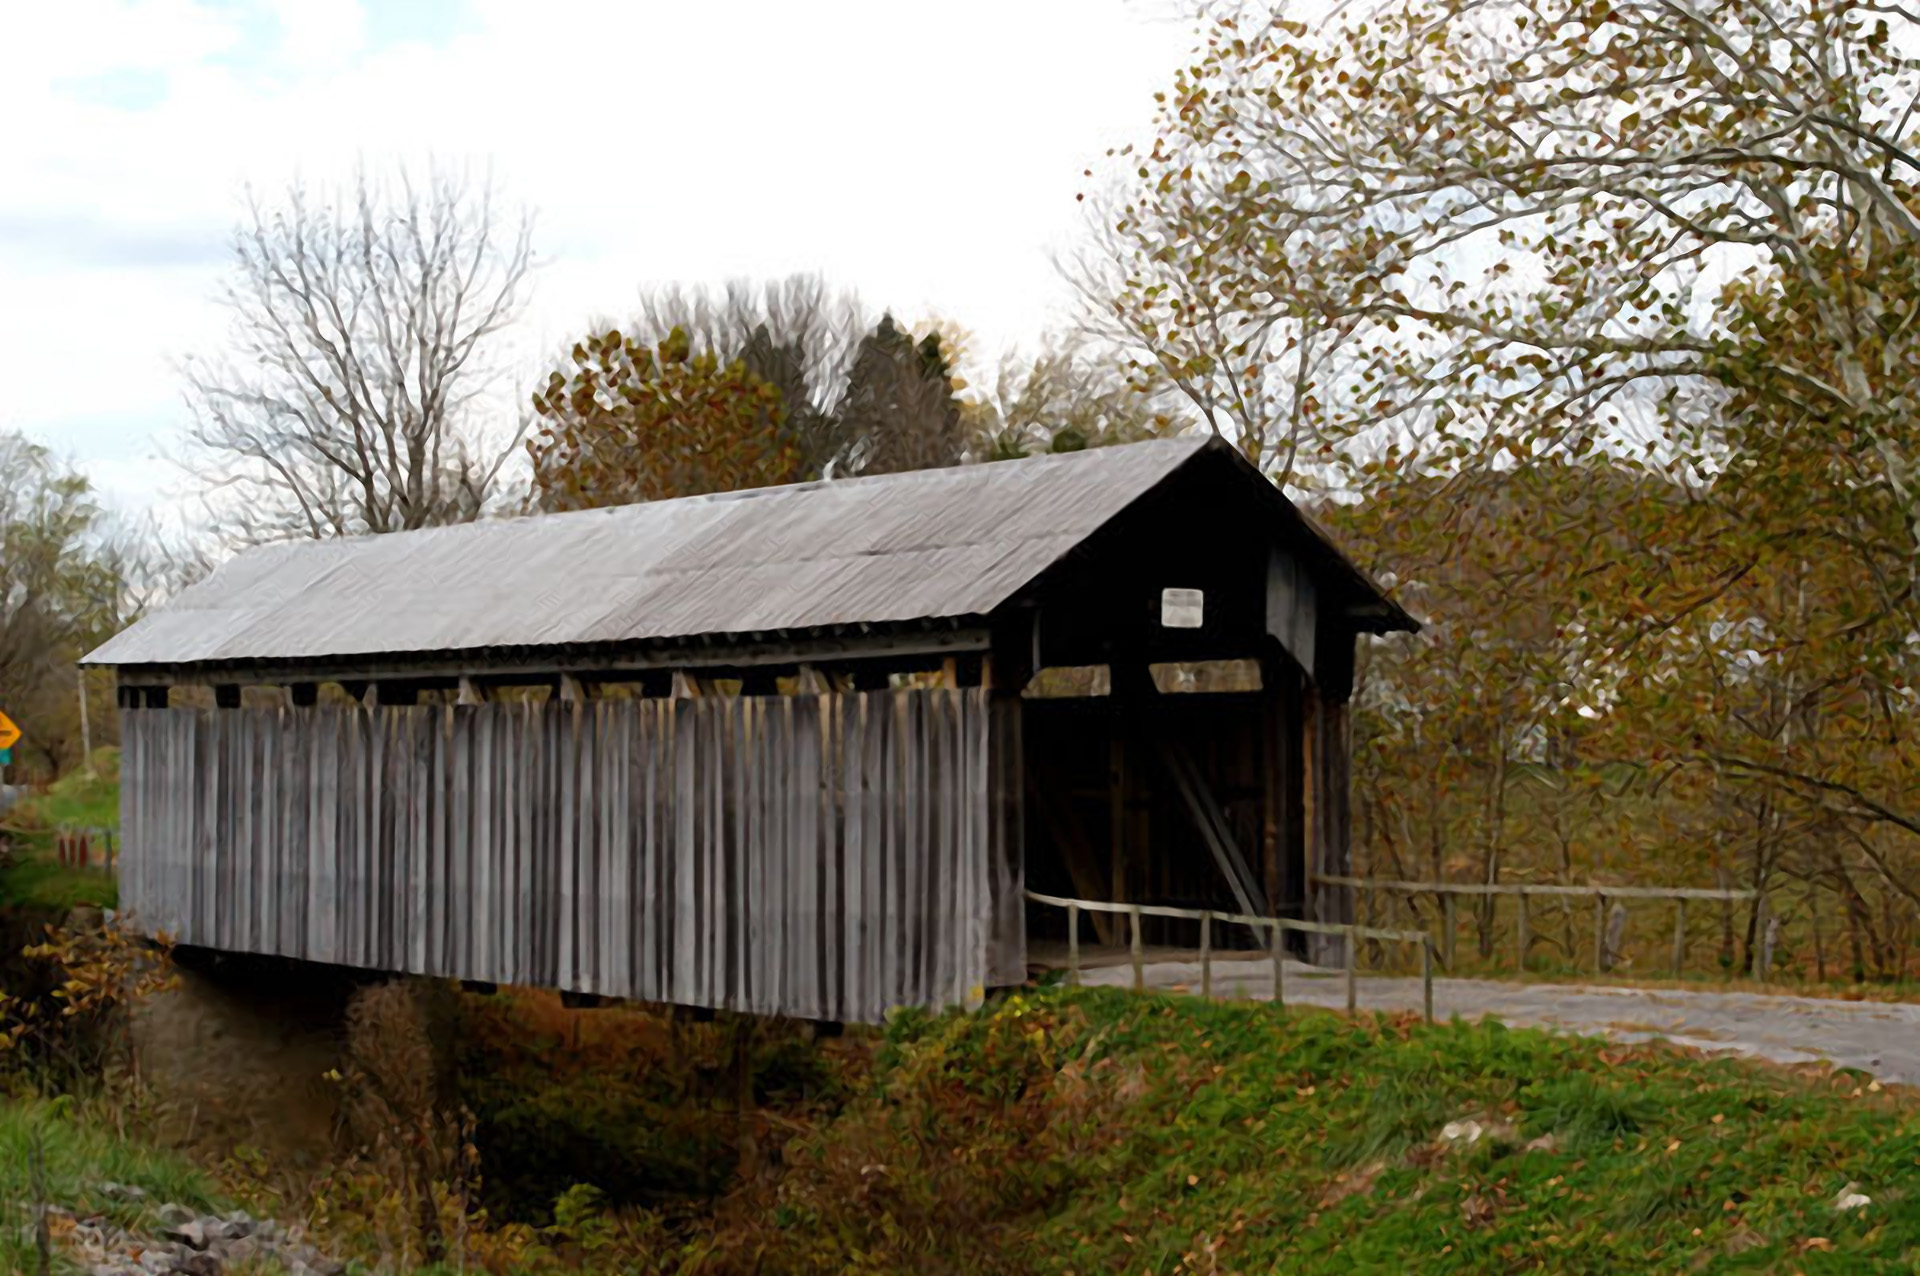 Ringos Mill Covered Bridge